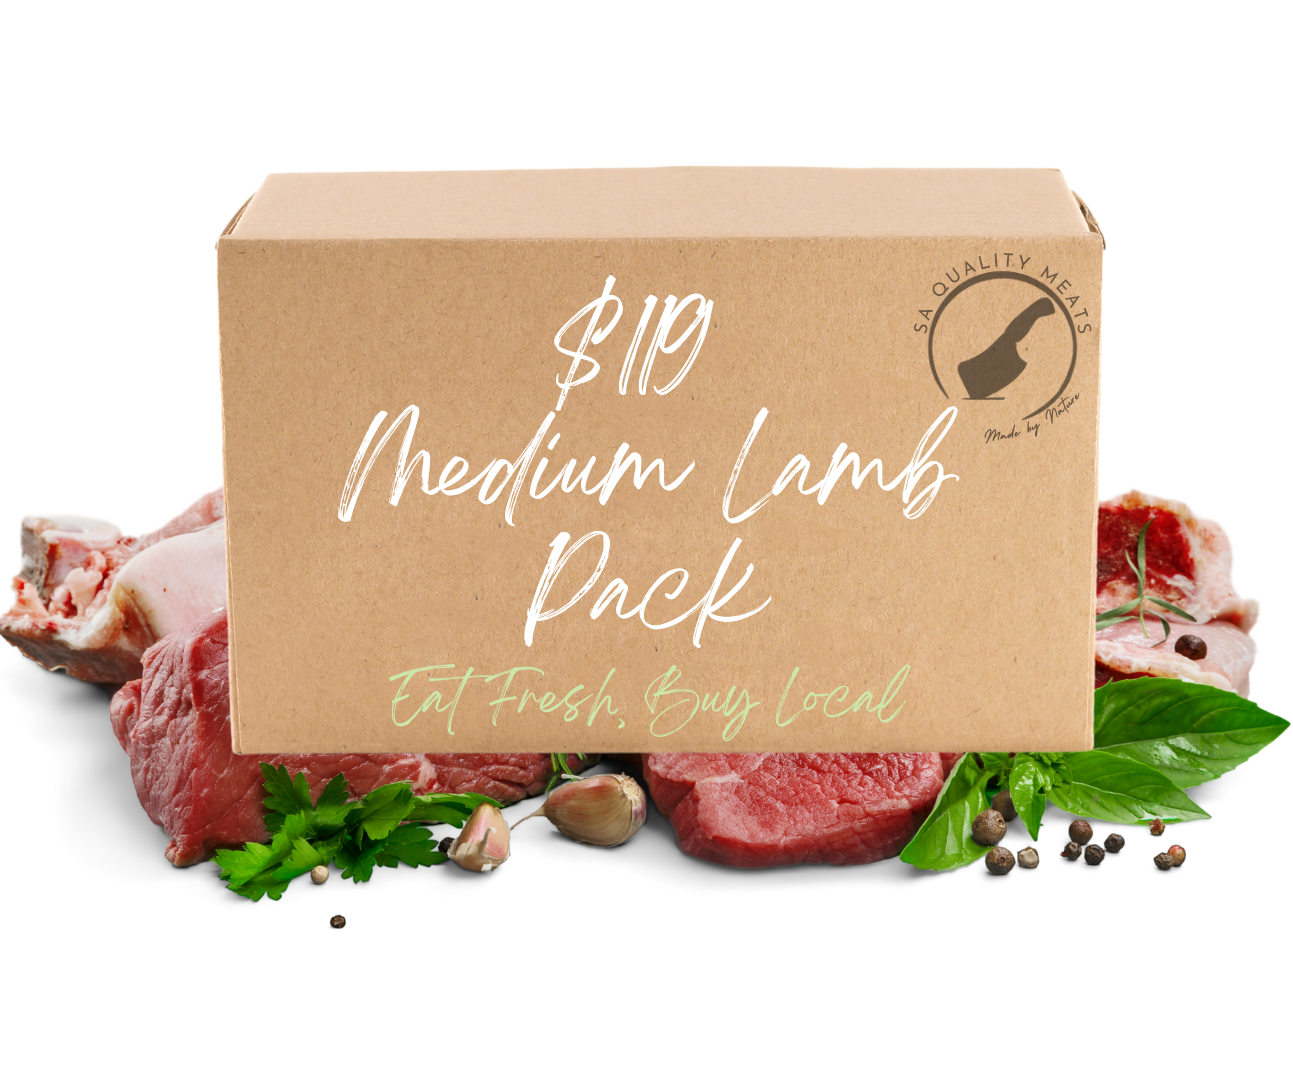 Medium Lamb Pack